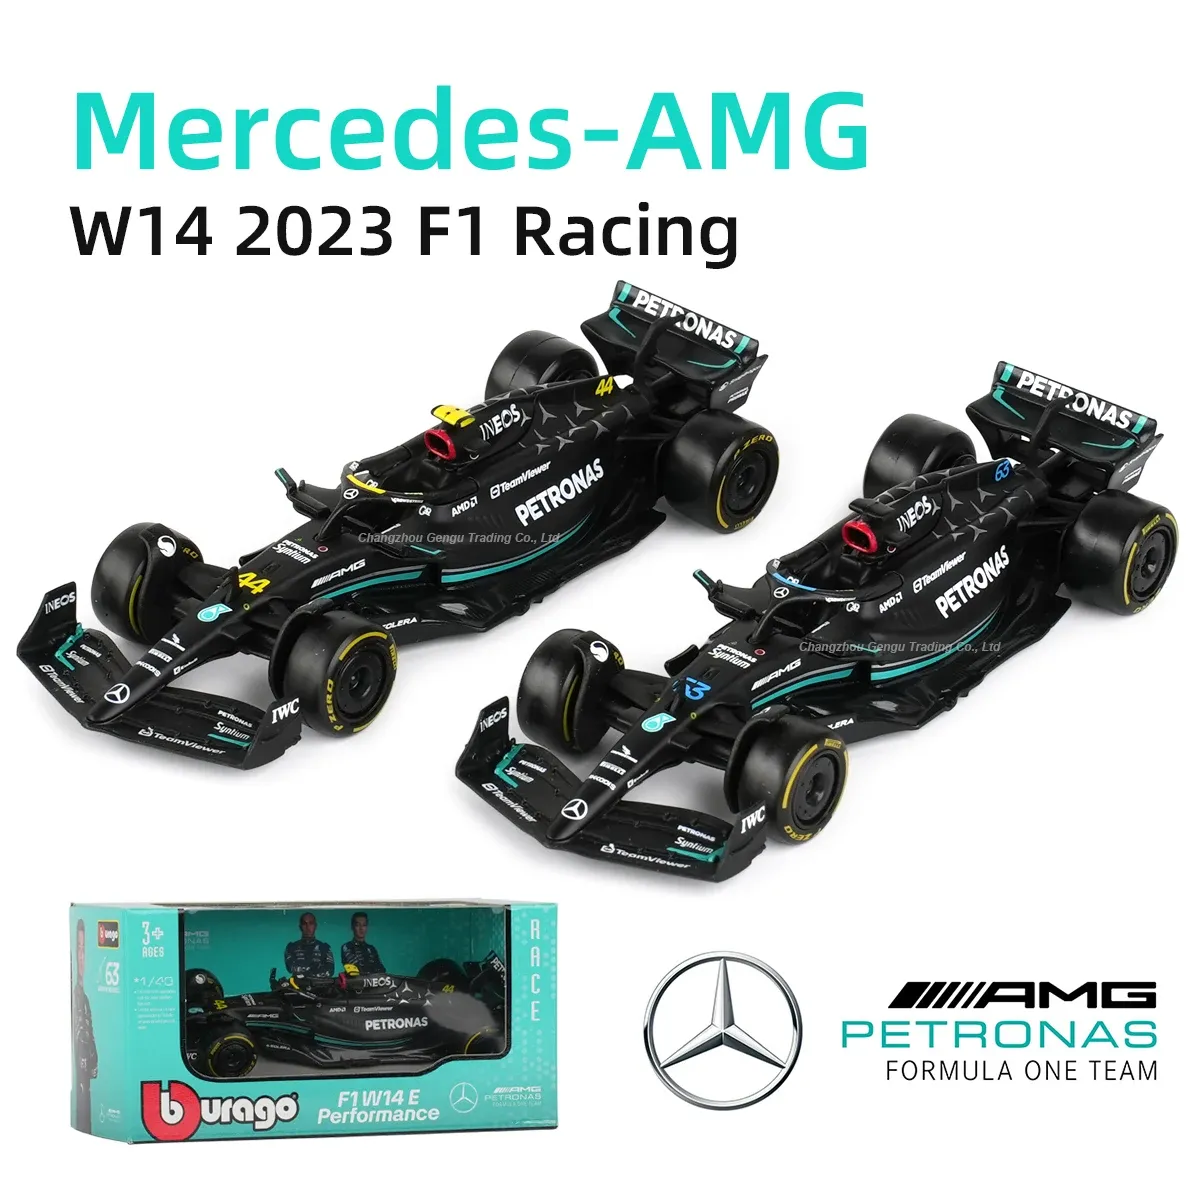 (taxa Inclusa) Miniatura Bburago Carro F1- Mercedes Amg 2023 W14, 1:43